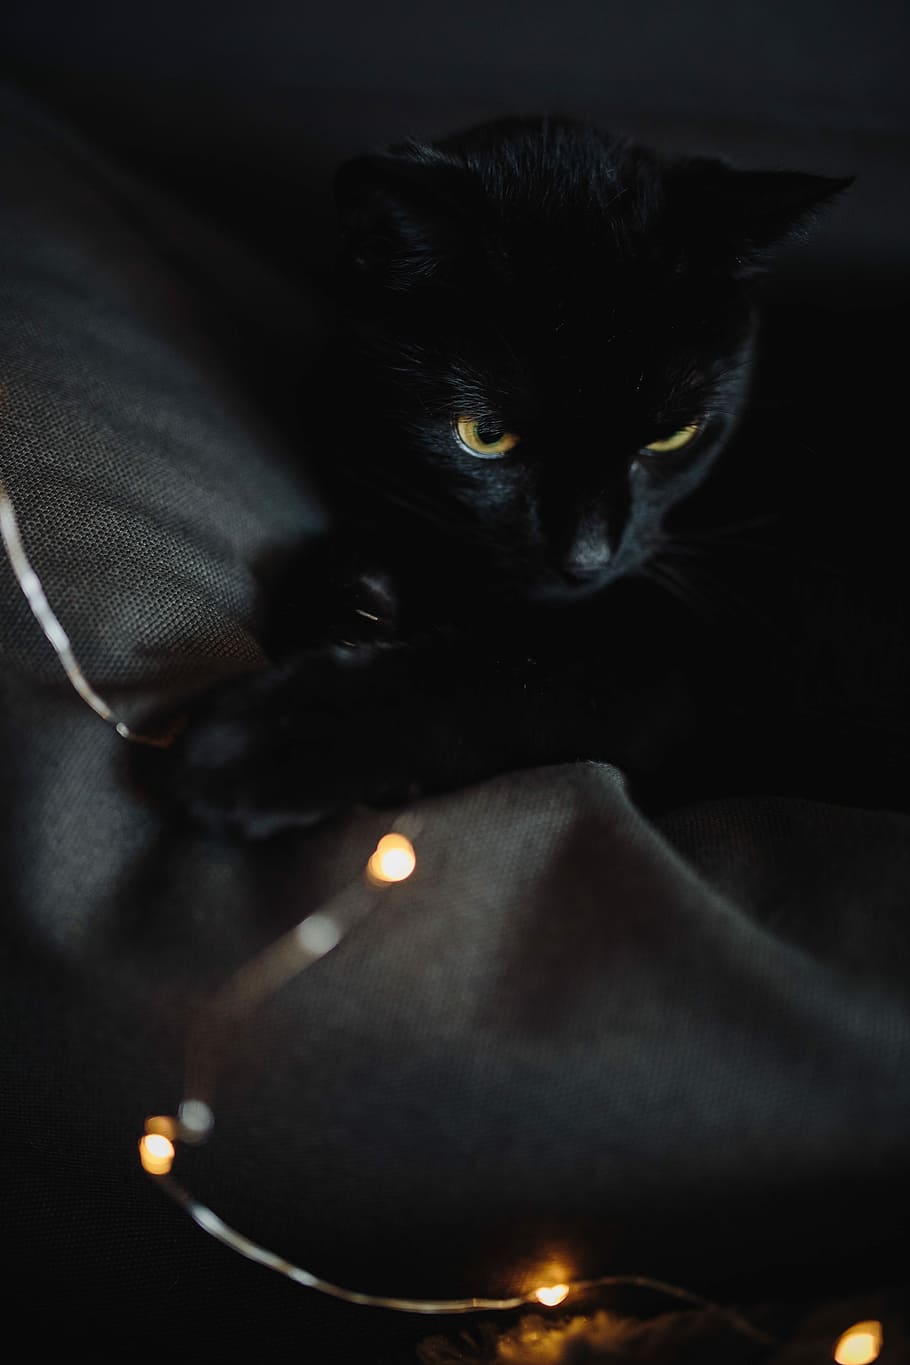 negro, gato, hadas, luces, gato negro, luces de hadas, mascota, animal, gato doméstico, mascotas